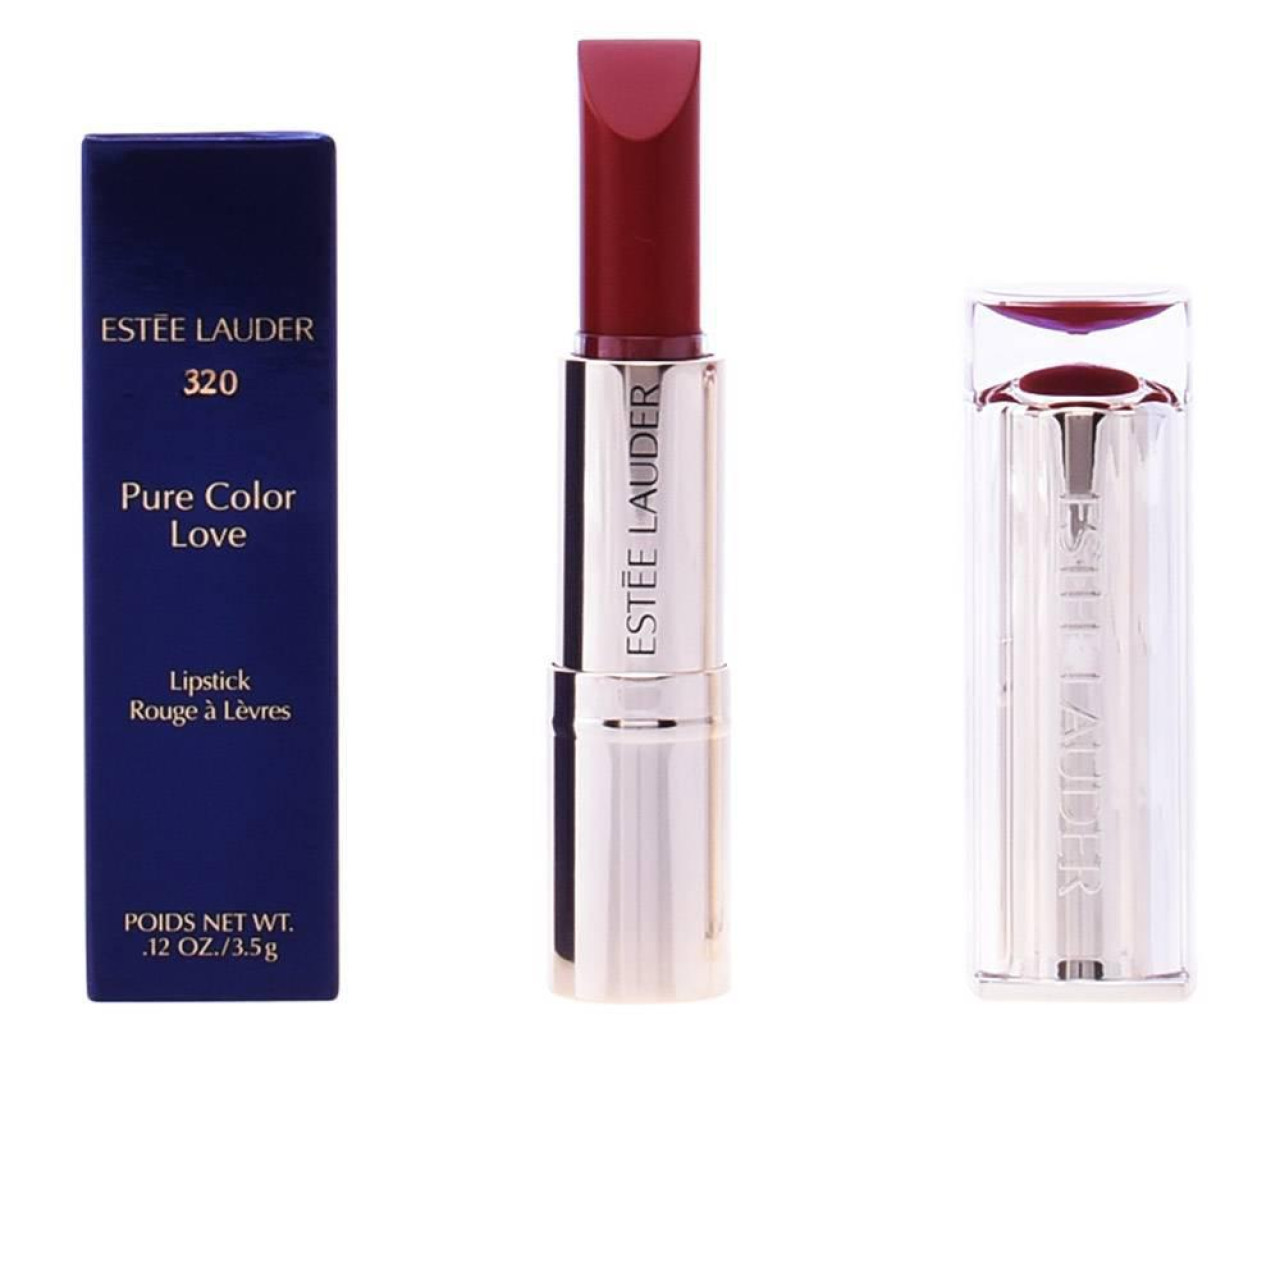 Estee Lauder pc love lipstick 320